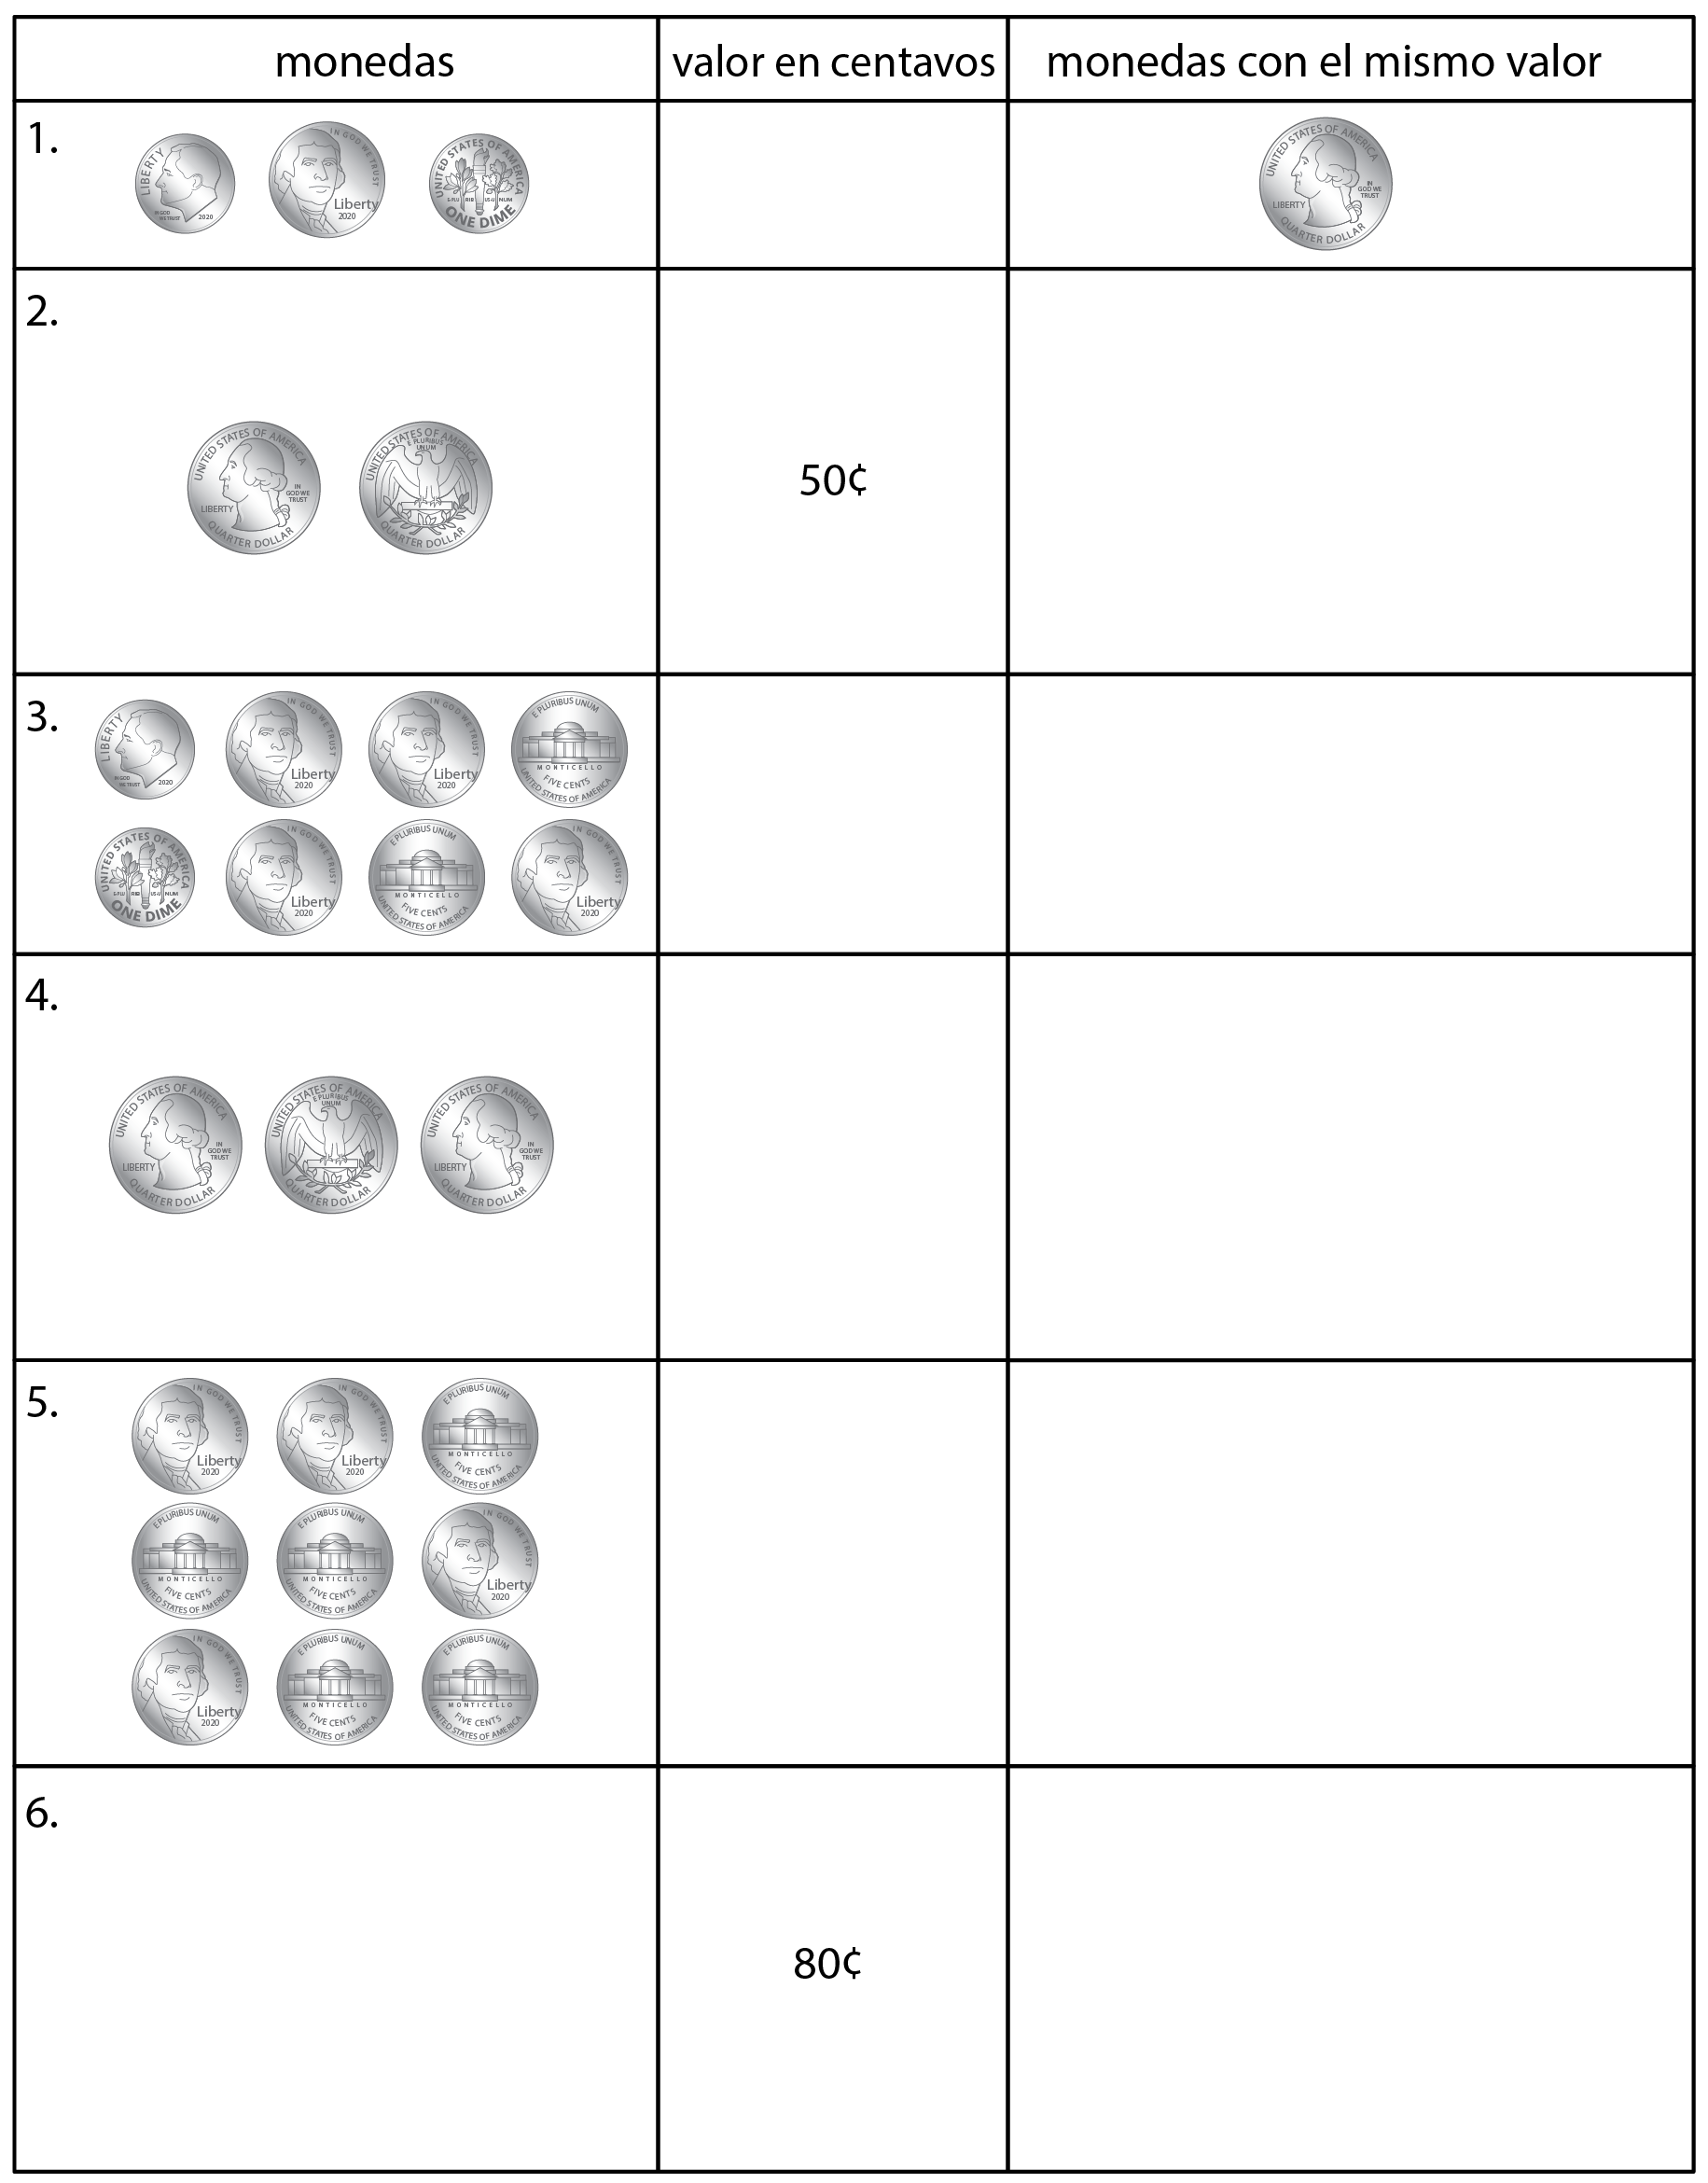 Tabla de monedas parcialmente completa. Categorías: monedas, valor en centavos y monedas con el mismo valor. Hay 6 filas.